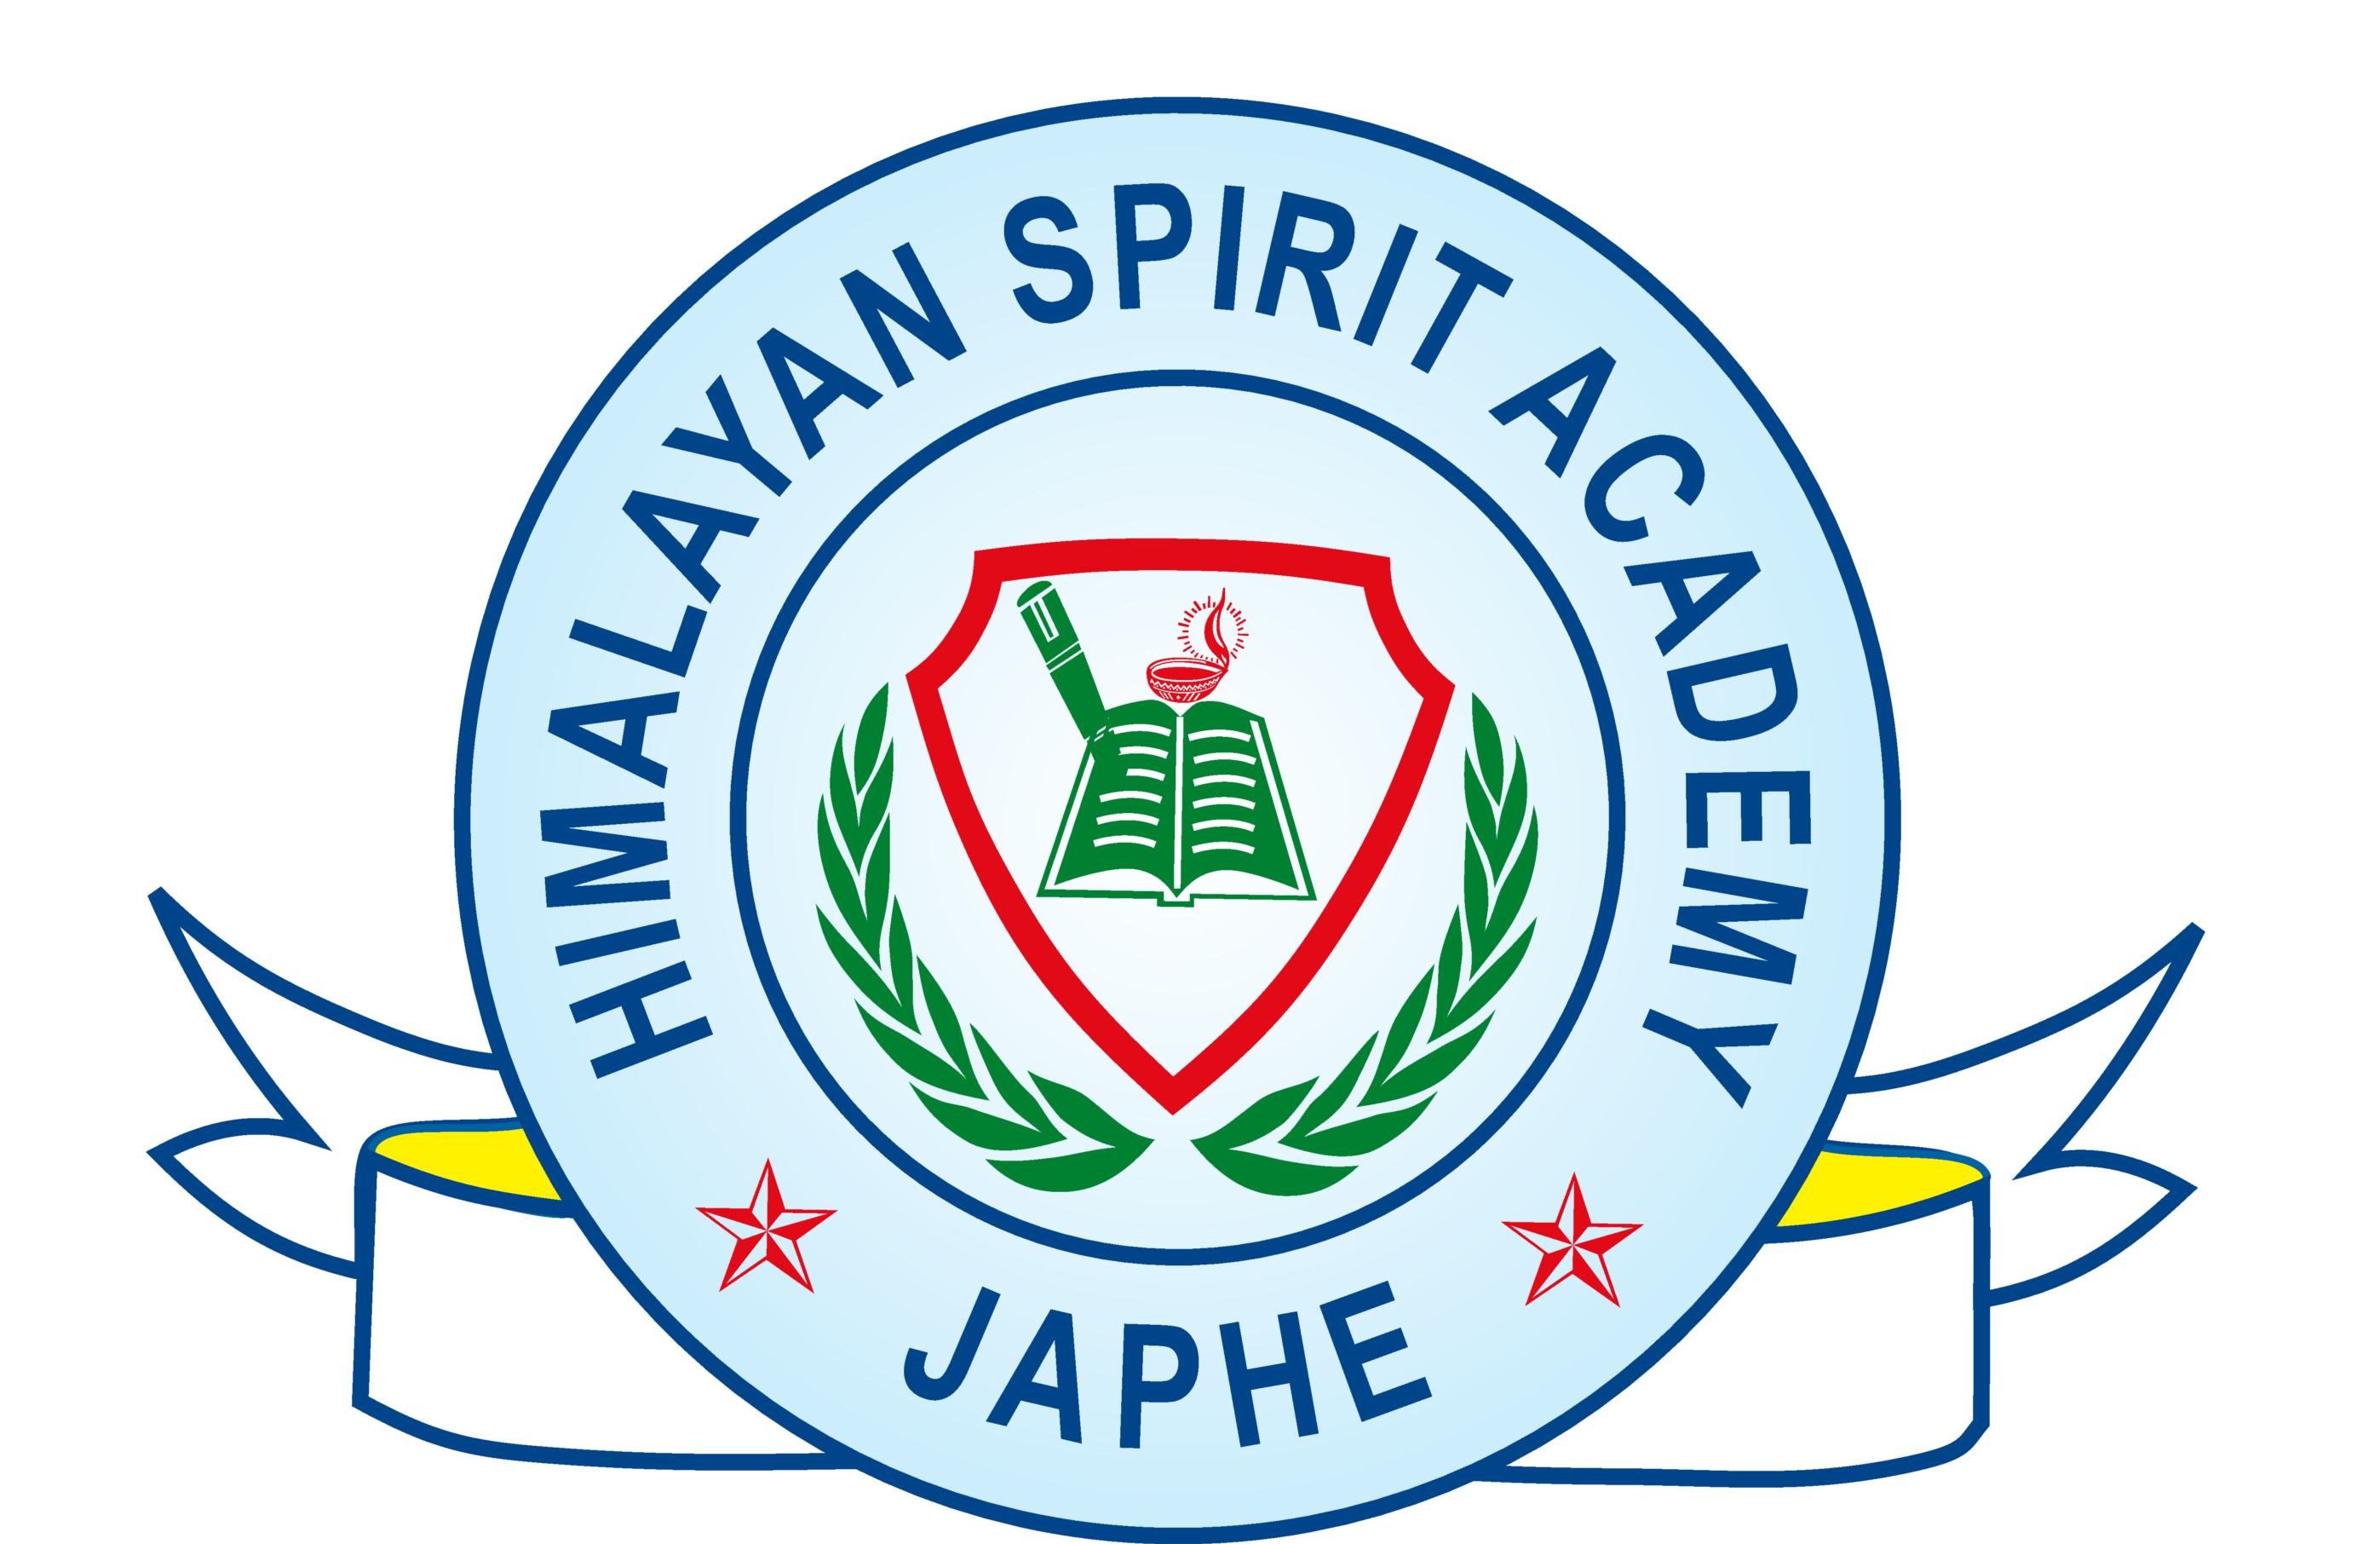 Himalayan Spirit Academy